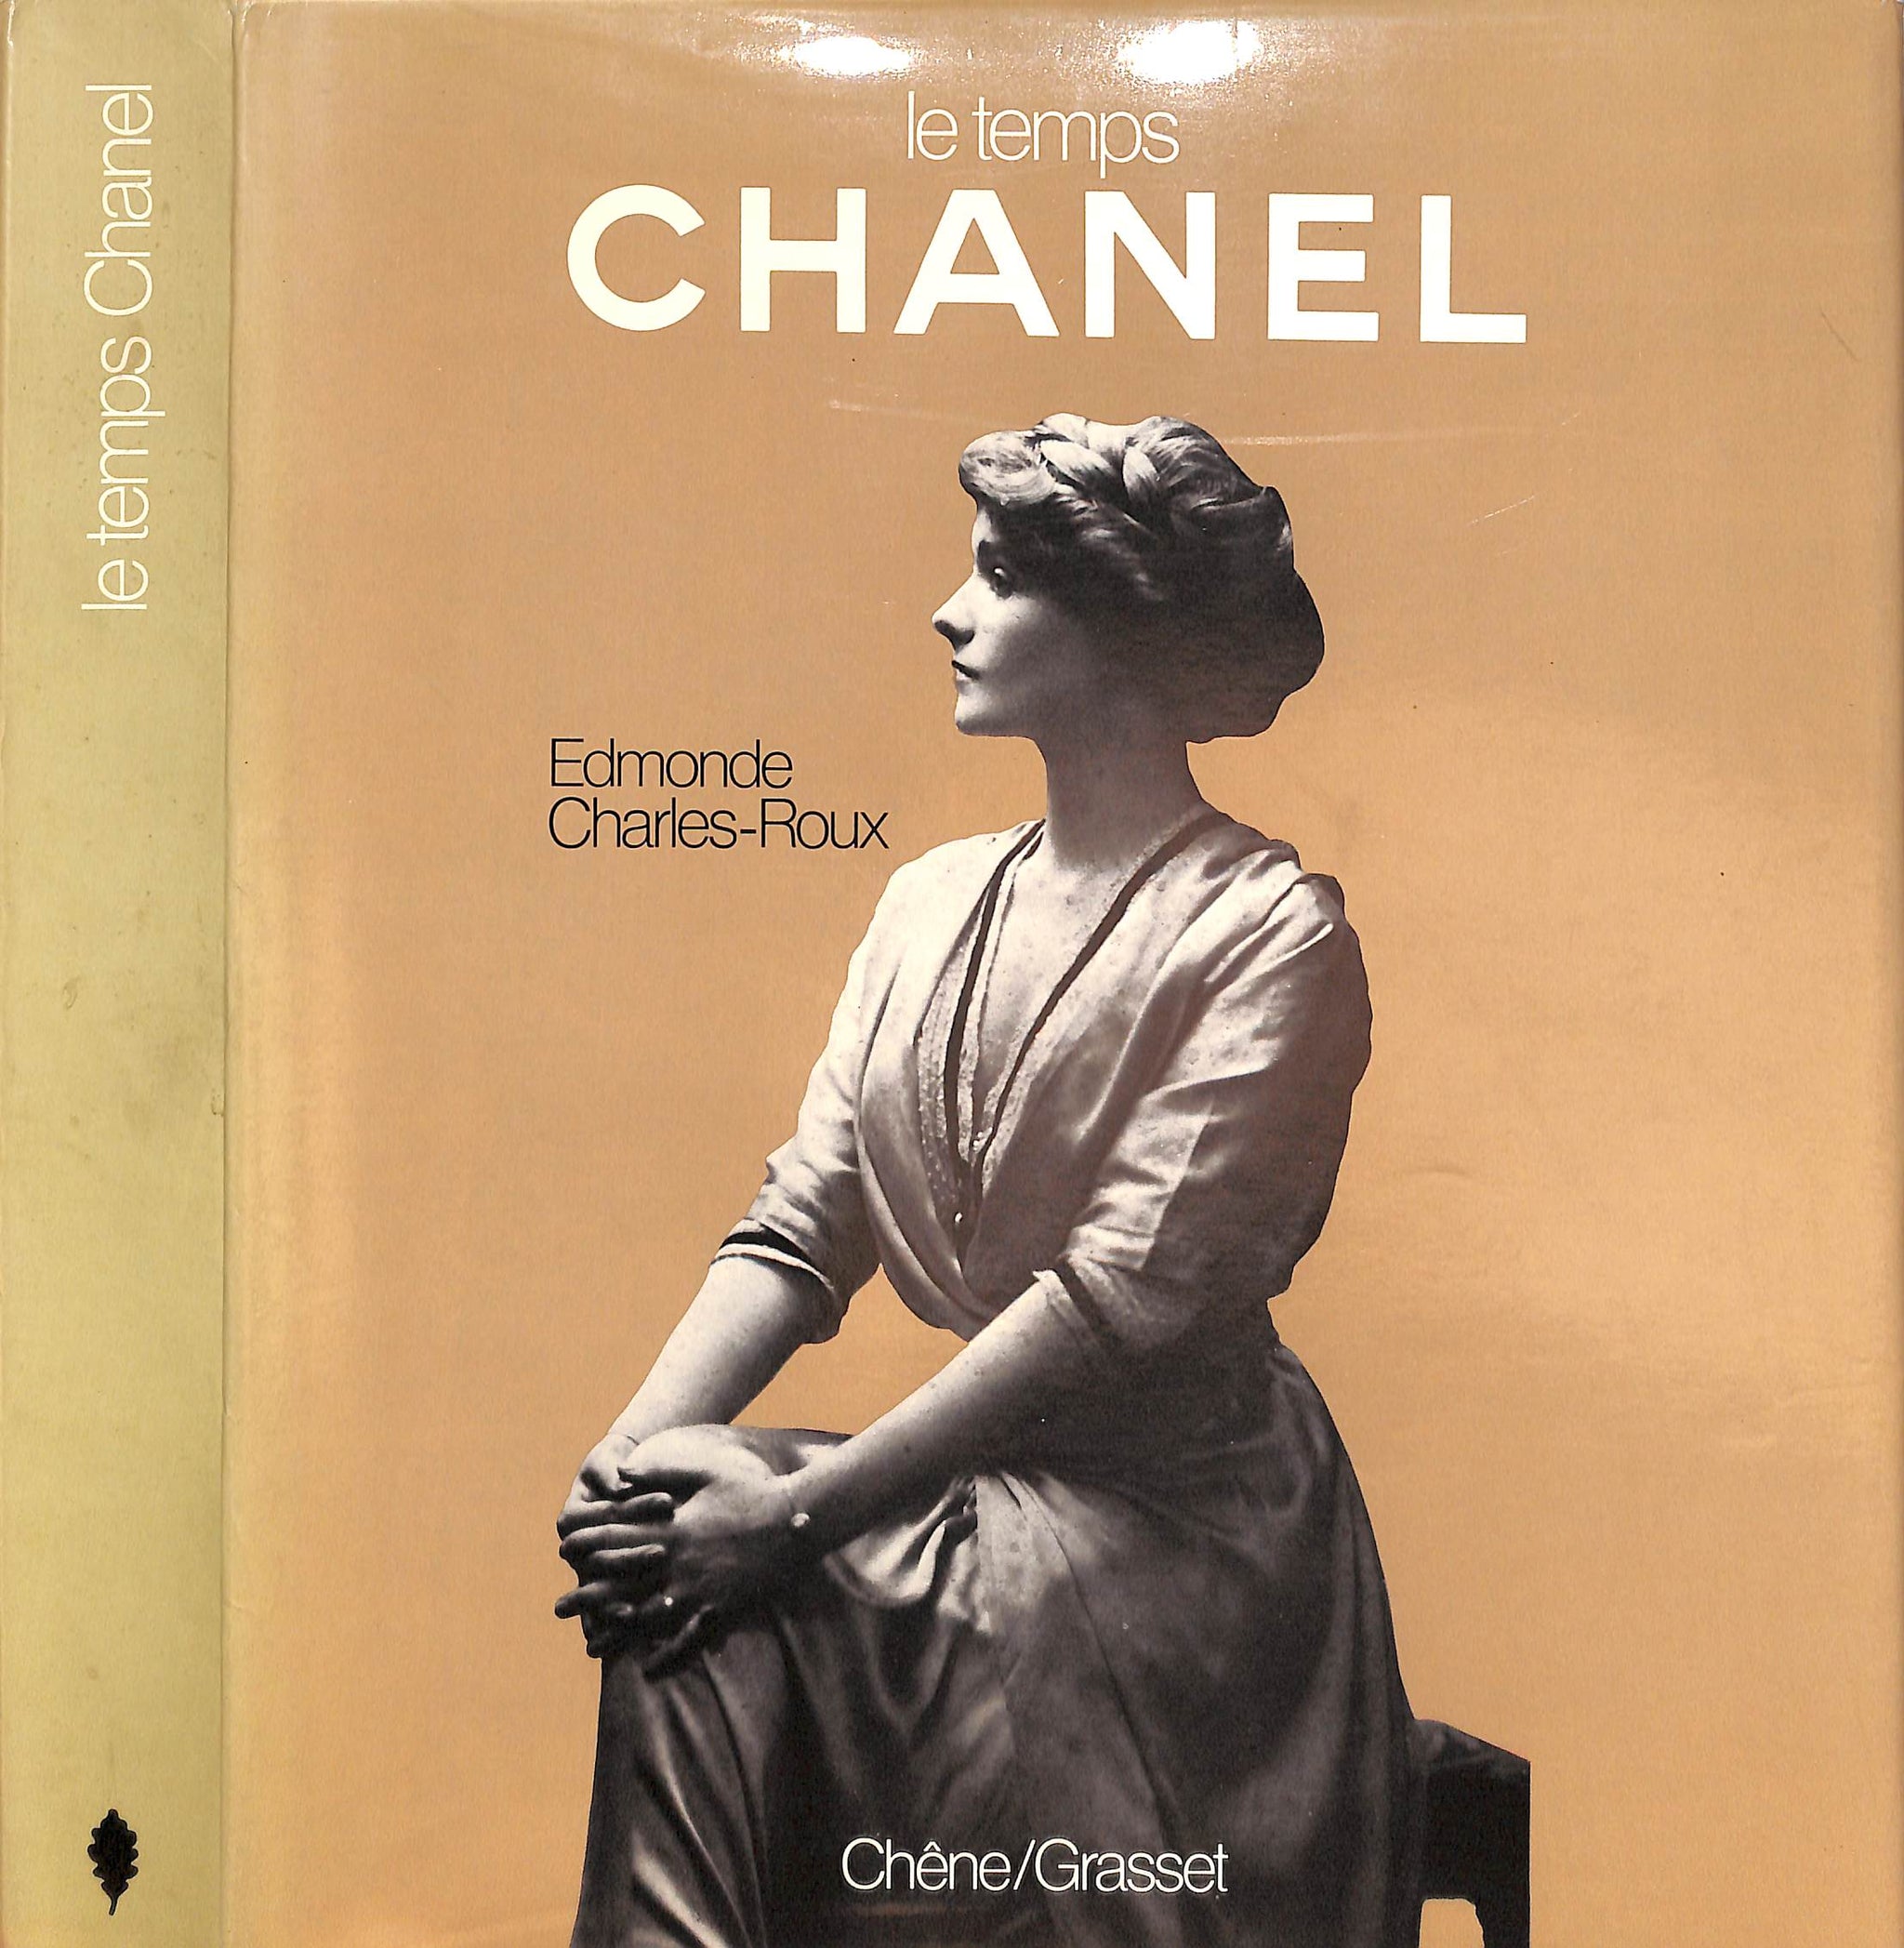 Stillehavsøer Minearbejder hvidløg Le Temps Chanel" 1979 CHARLES-ROUX, Edmonde